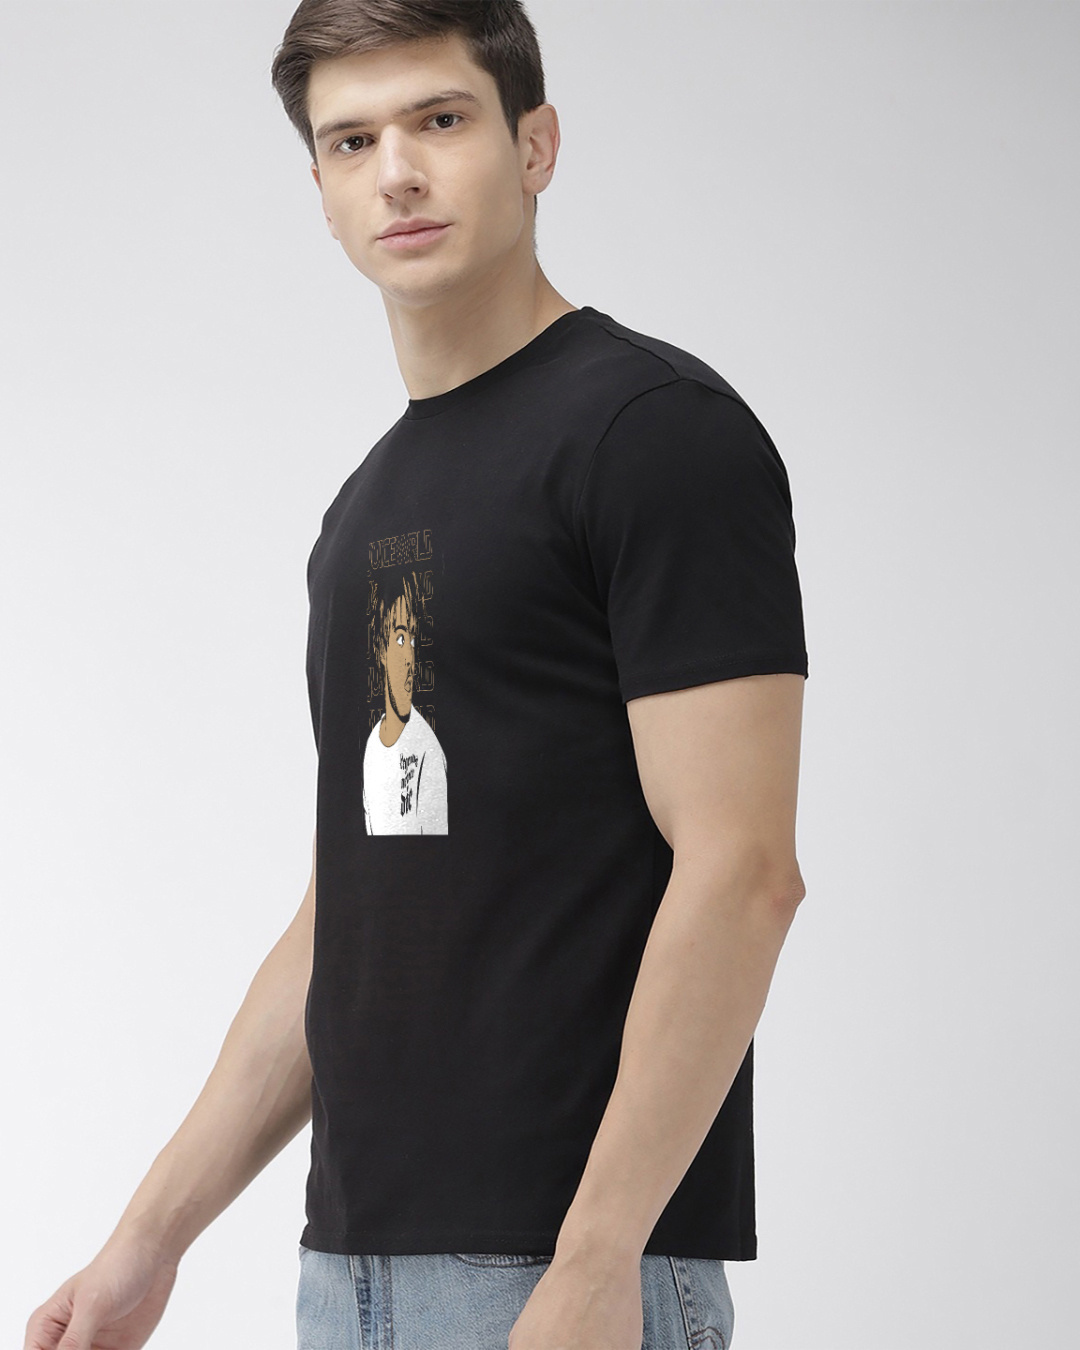 Shop Men's Black Juice Wrld Graphic Printed Cotton T-shirt-Back